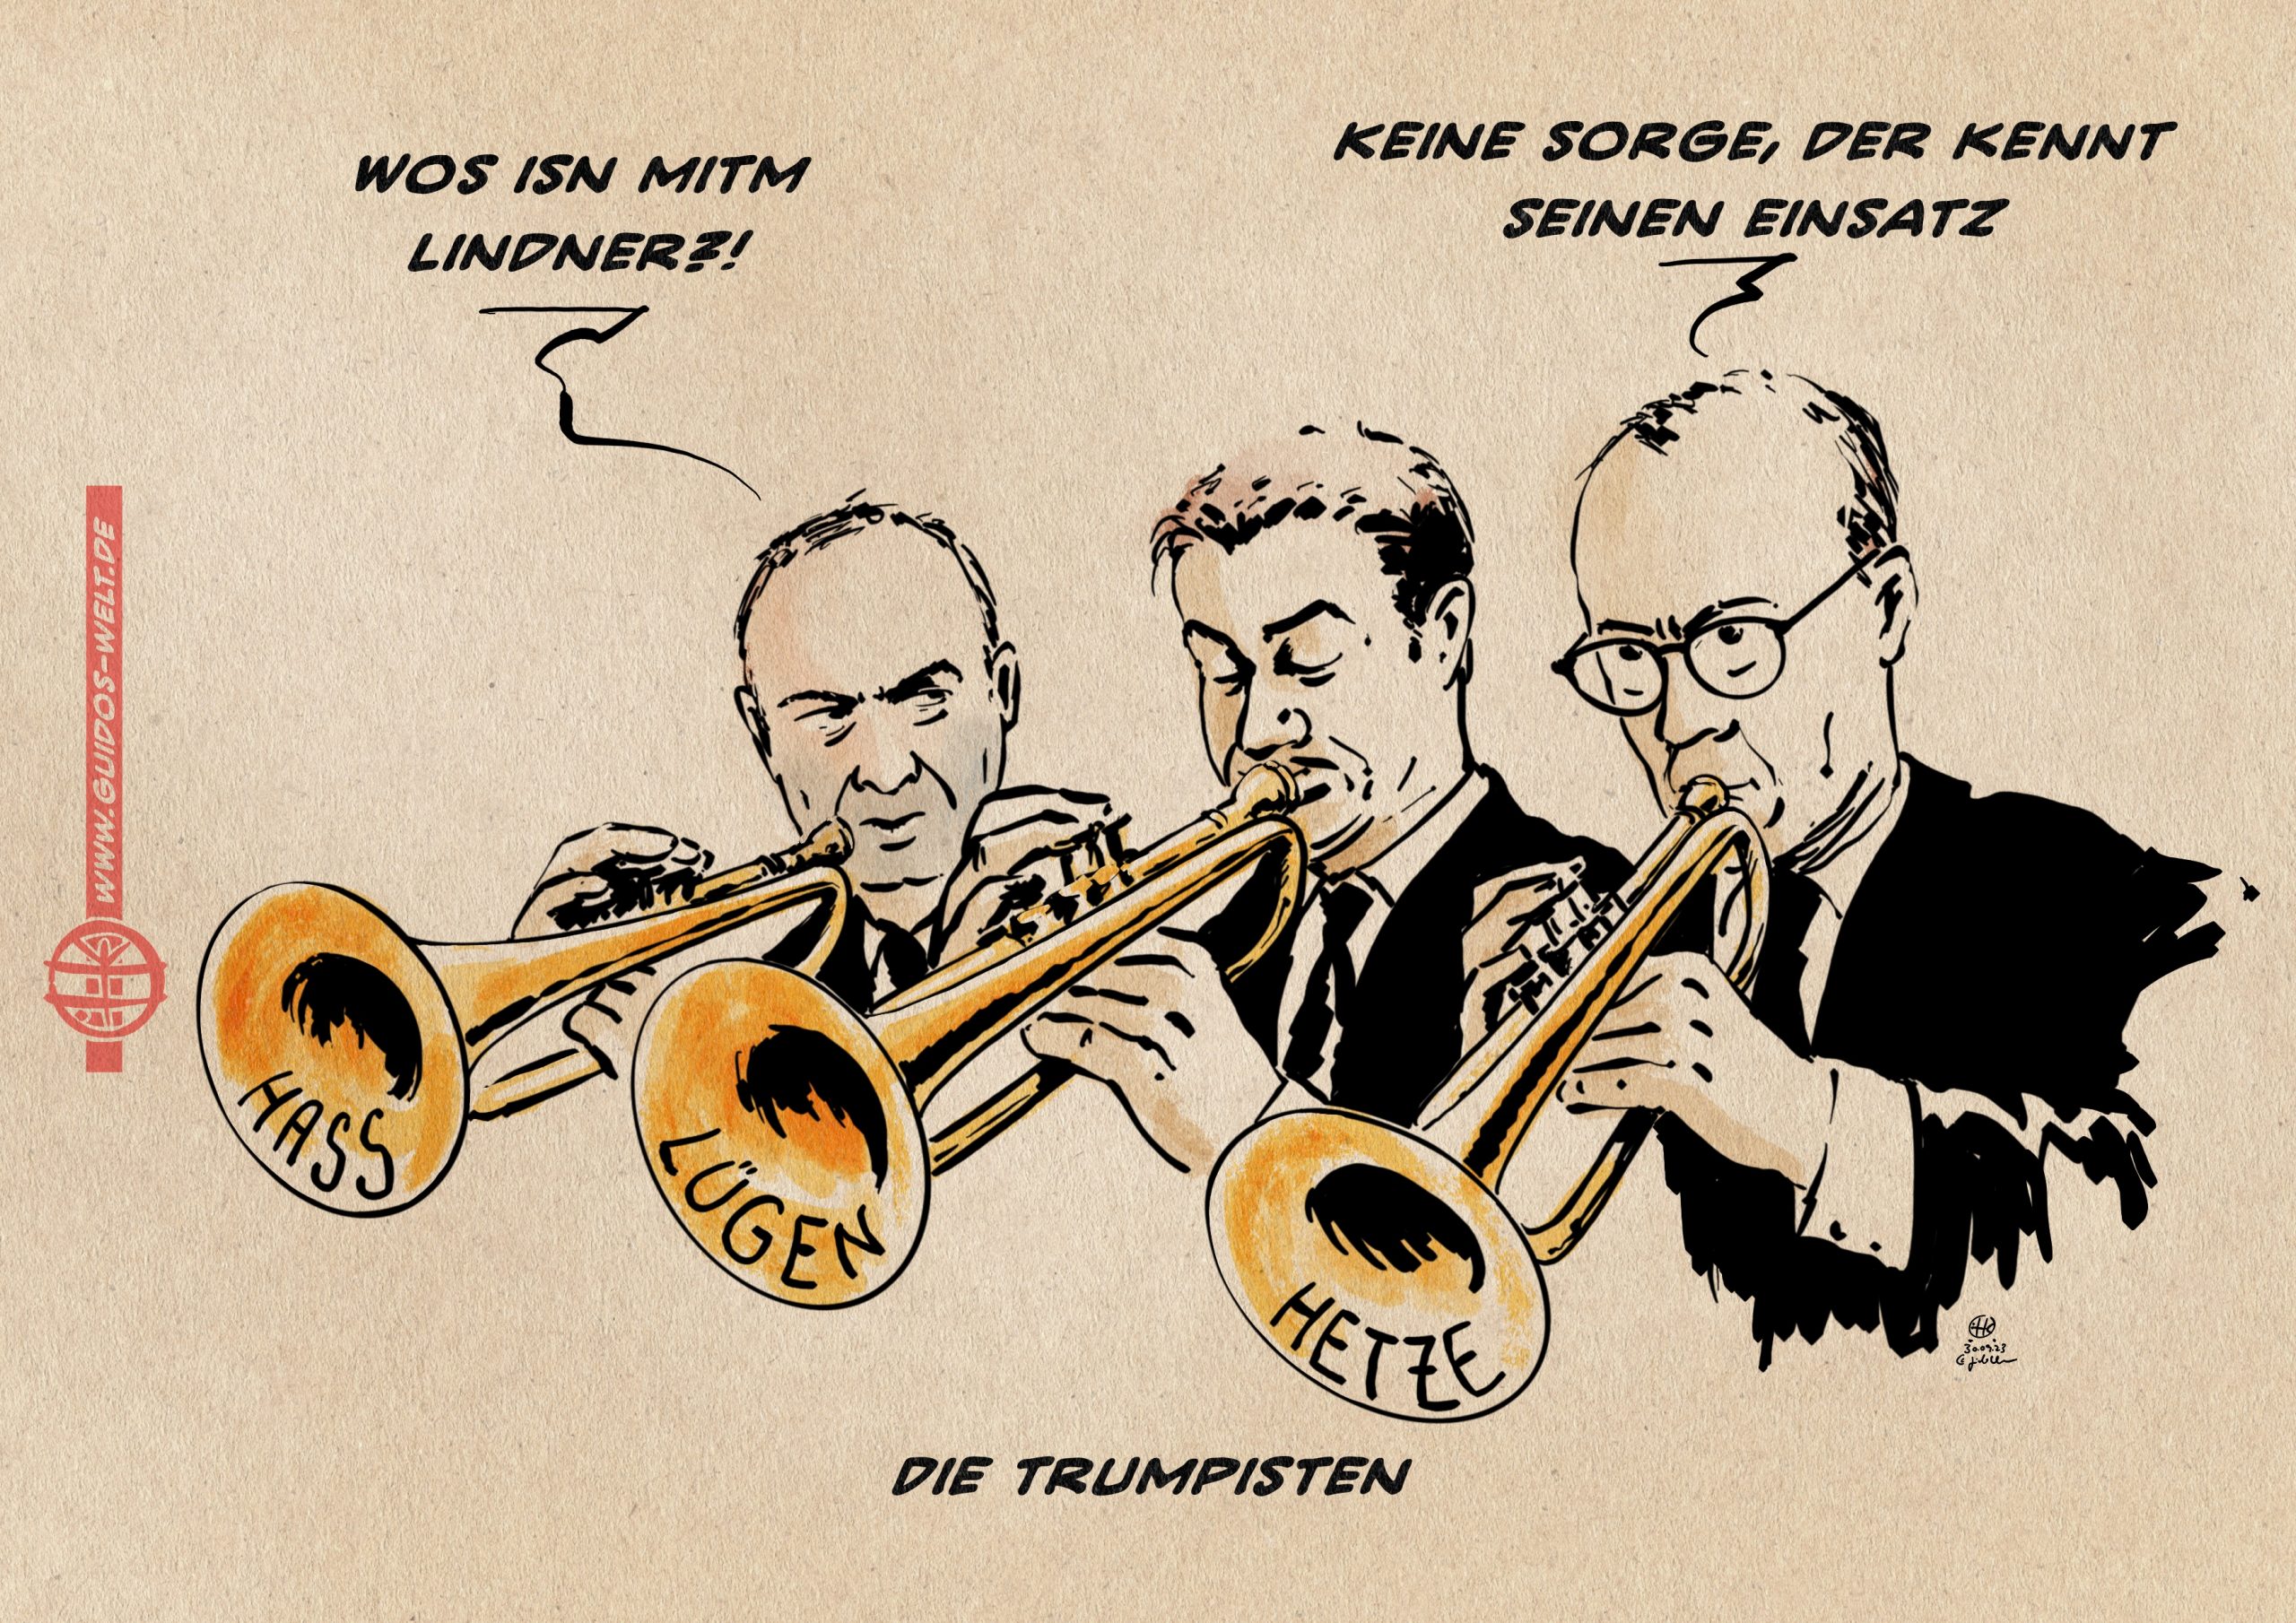 Die Trumpisten